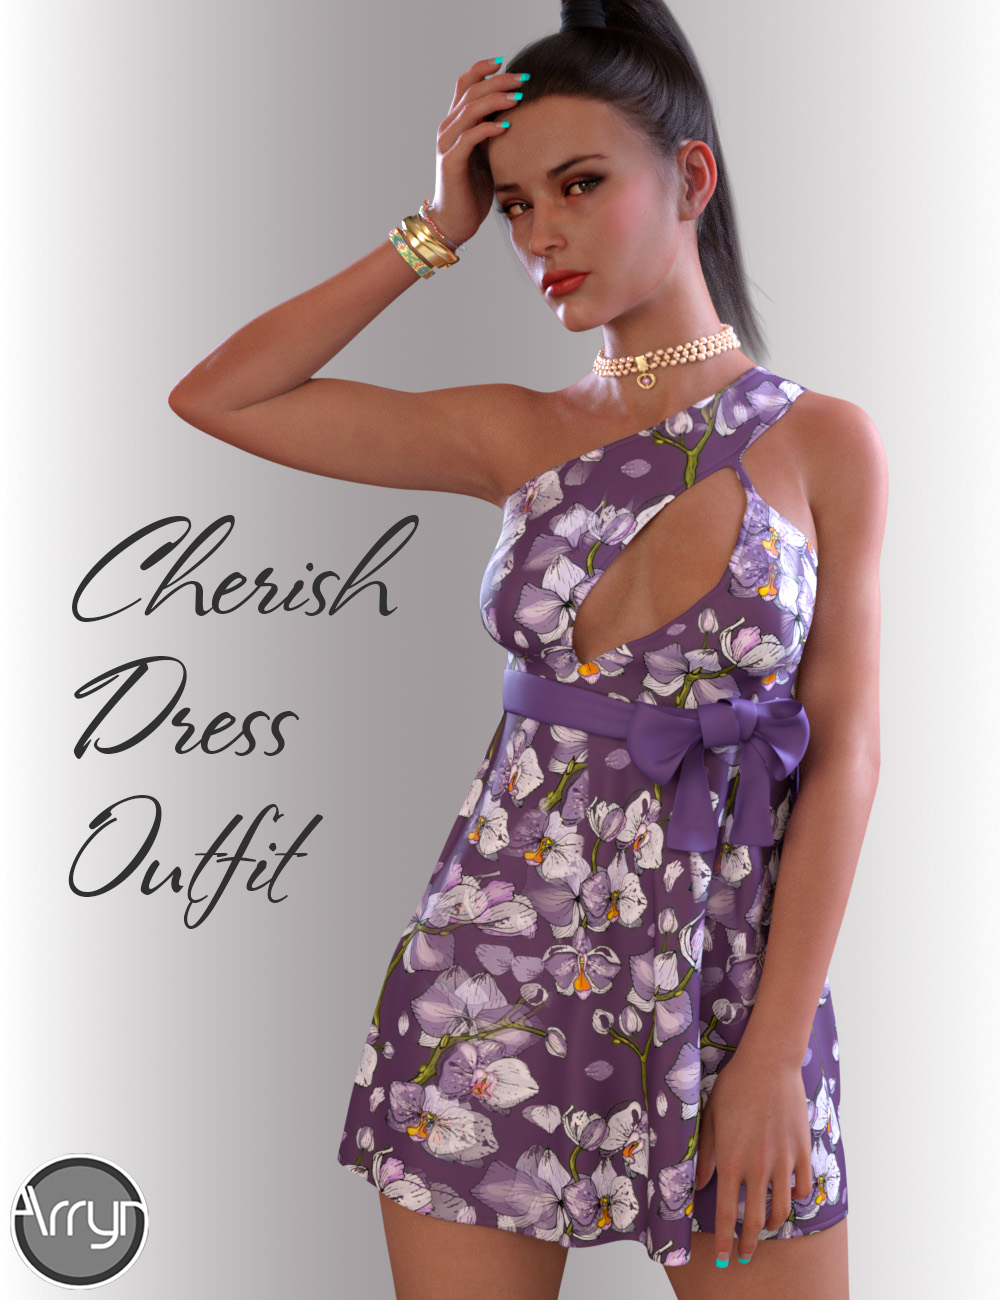 dForce Cherish Candy Dress for Genesis 8 Female(s) by: OnnelArryn, 3D Models by Daz 3D